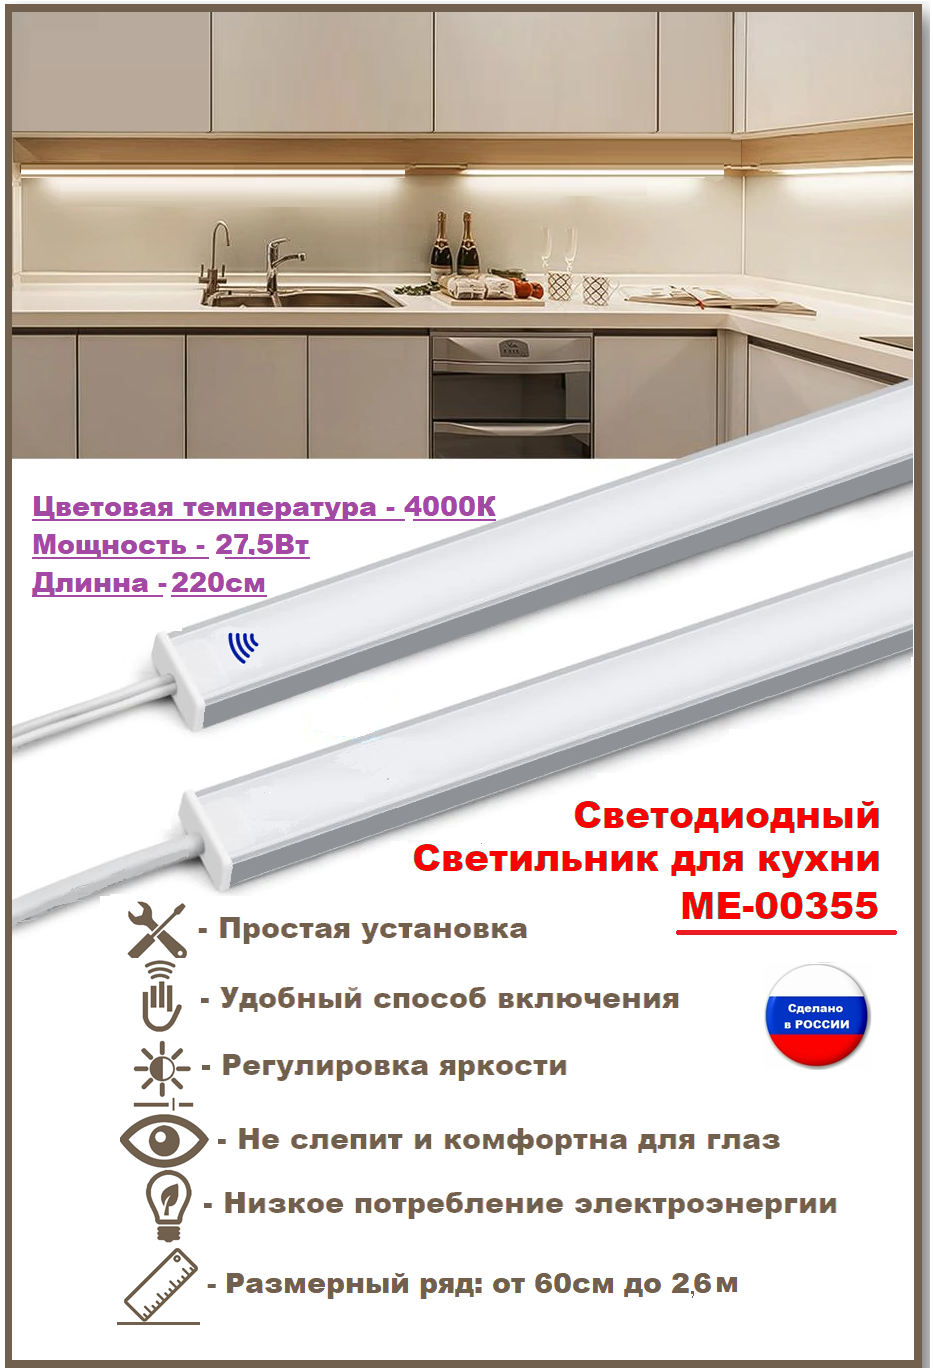 Светодиодный светильник для кухни под навесные шкафы, с включателем от взмаха руки 220см (из 2х частей 110см+110см), 4000К-дневной белый.